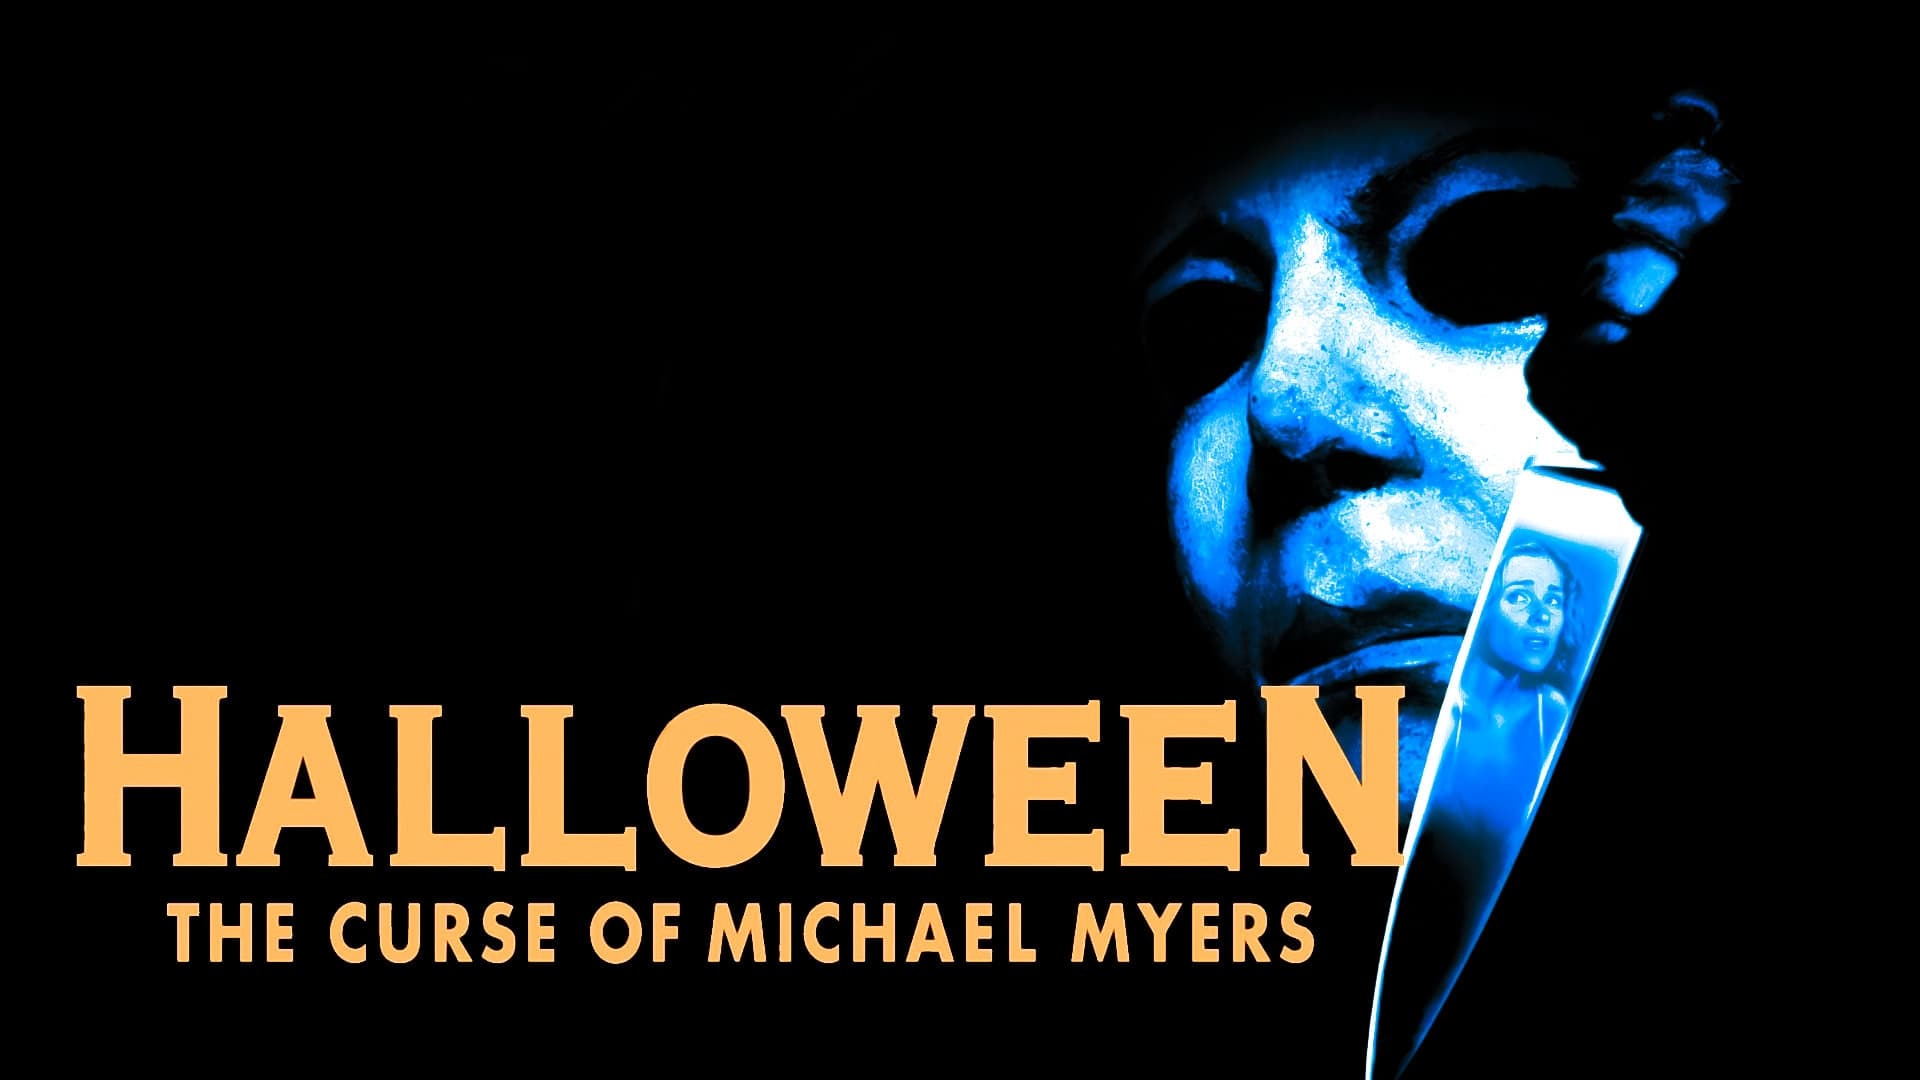 A Maldição de Michael Myers